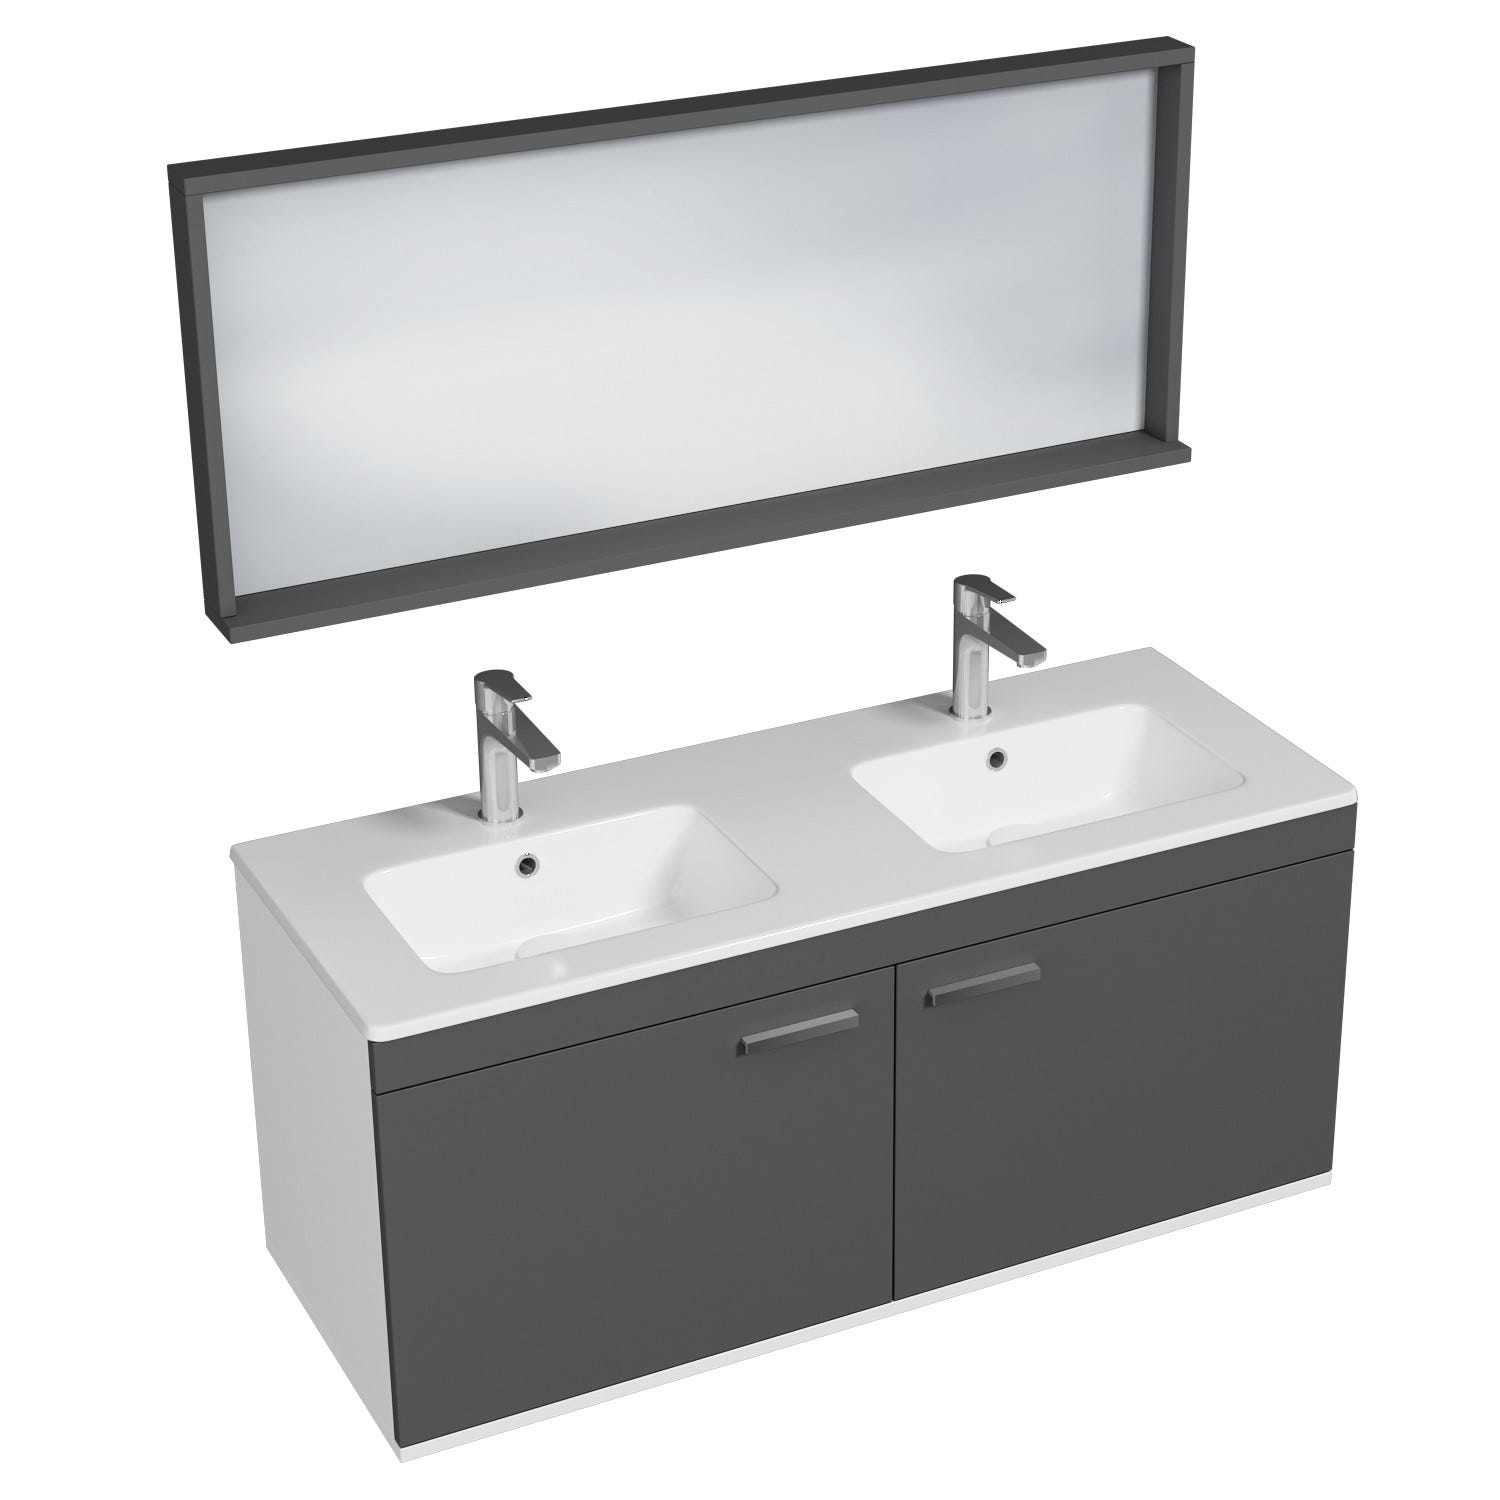 RUBITE Meuble salle de bain double vasque 2 portes gris anthracite largeur 120 cm + miroir cadre 0